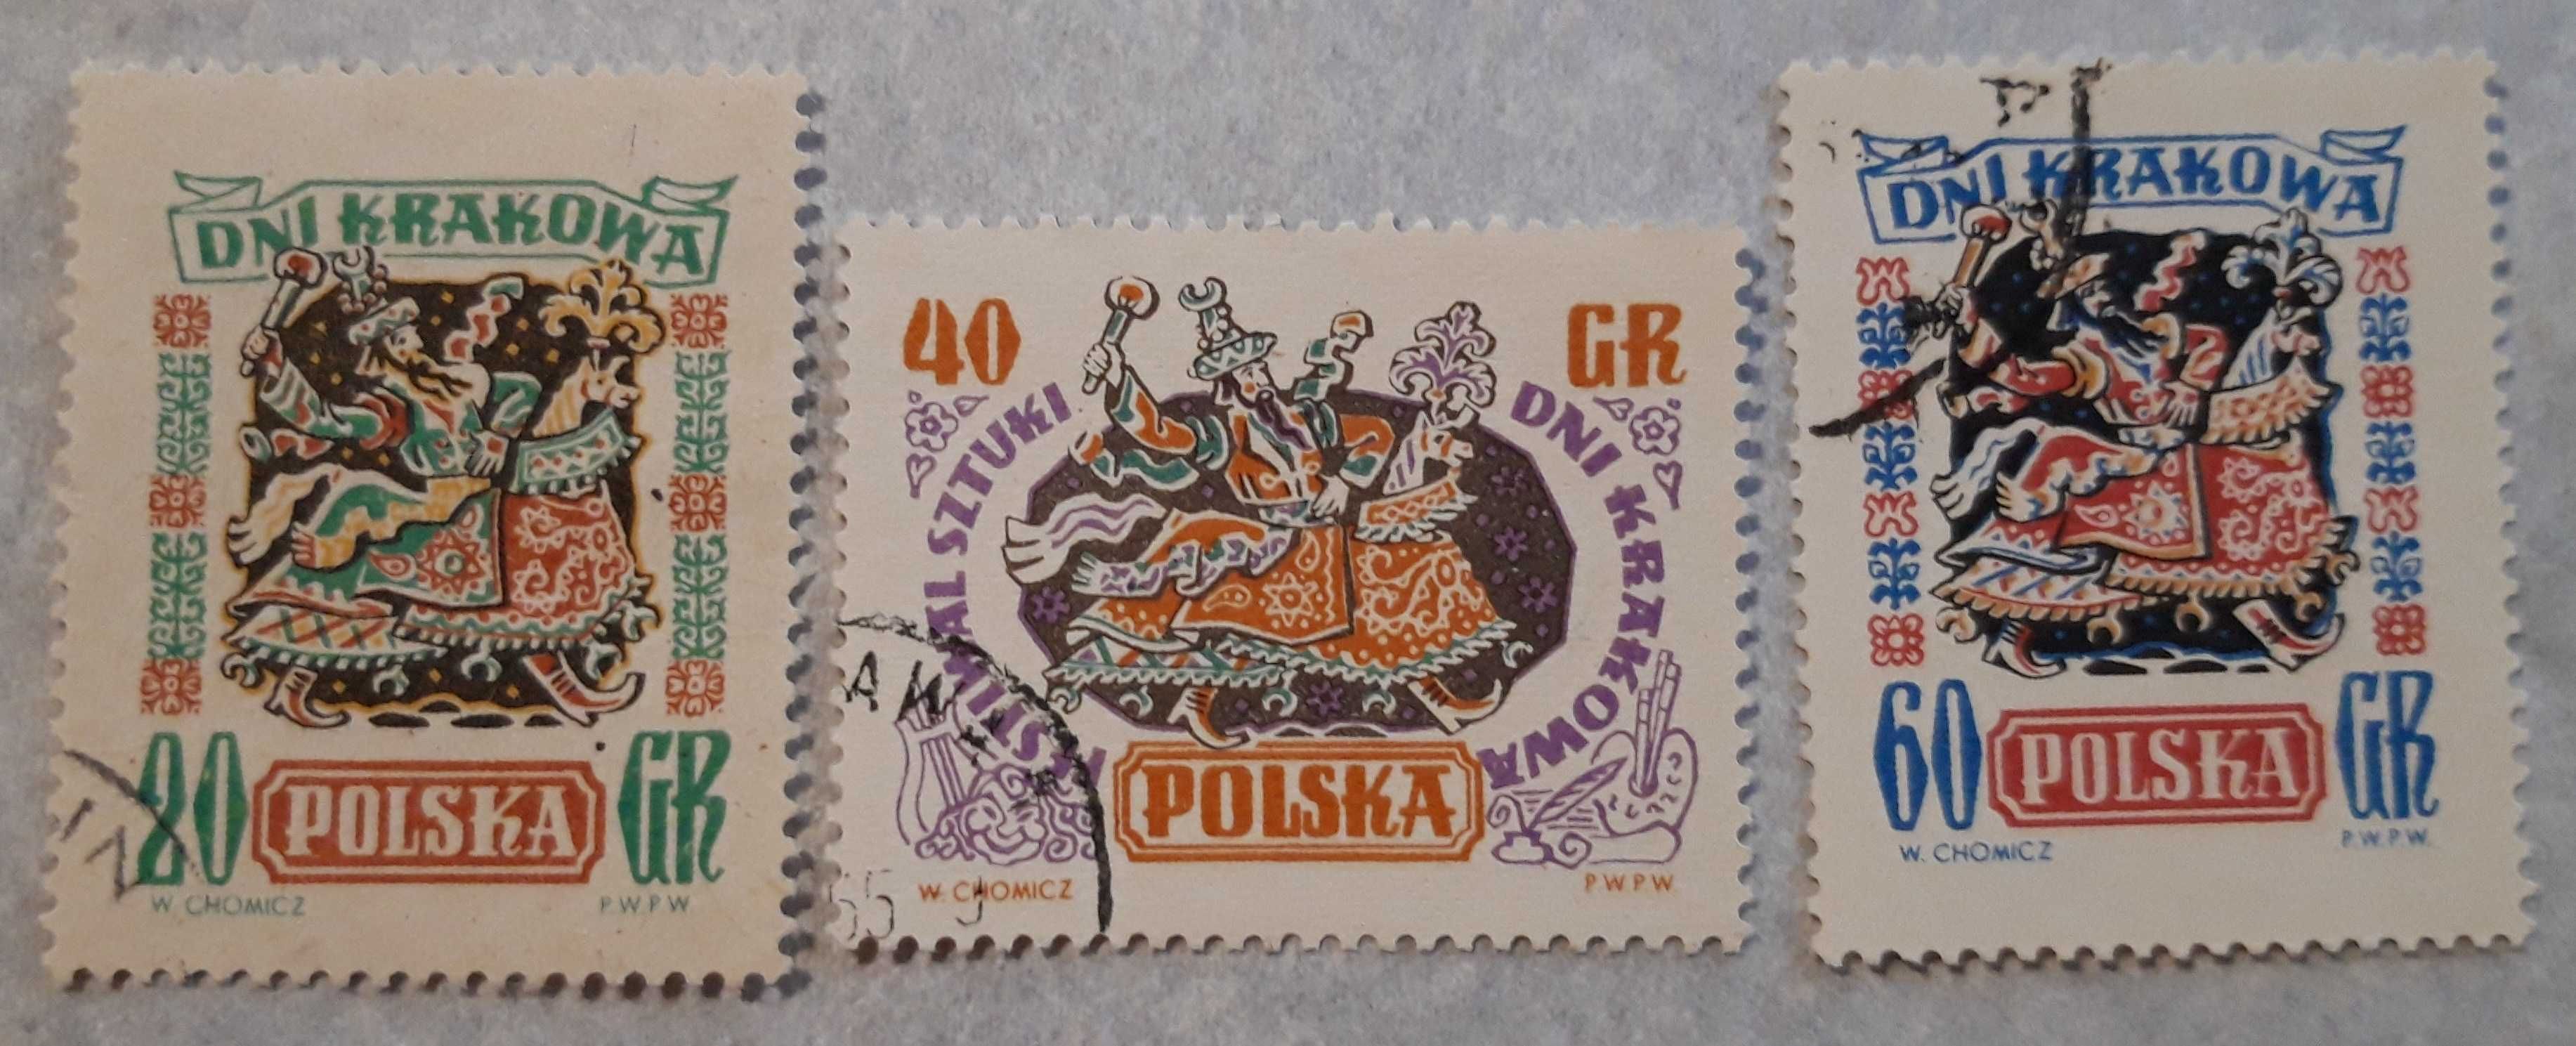 Usterki. Znaczki pocztowe Fi 775-77. Kasowane. 1955 rok.